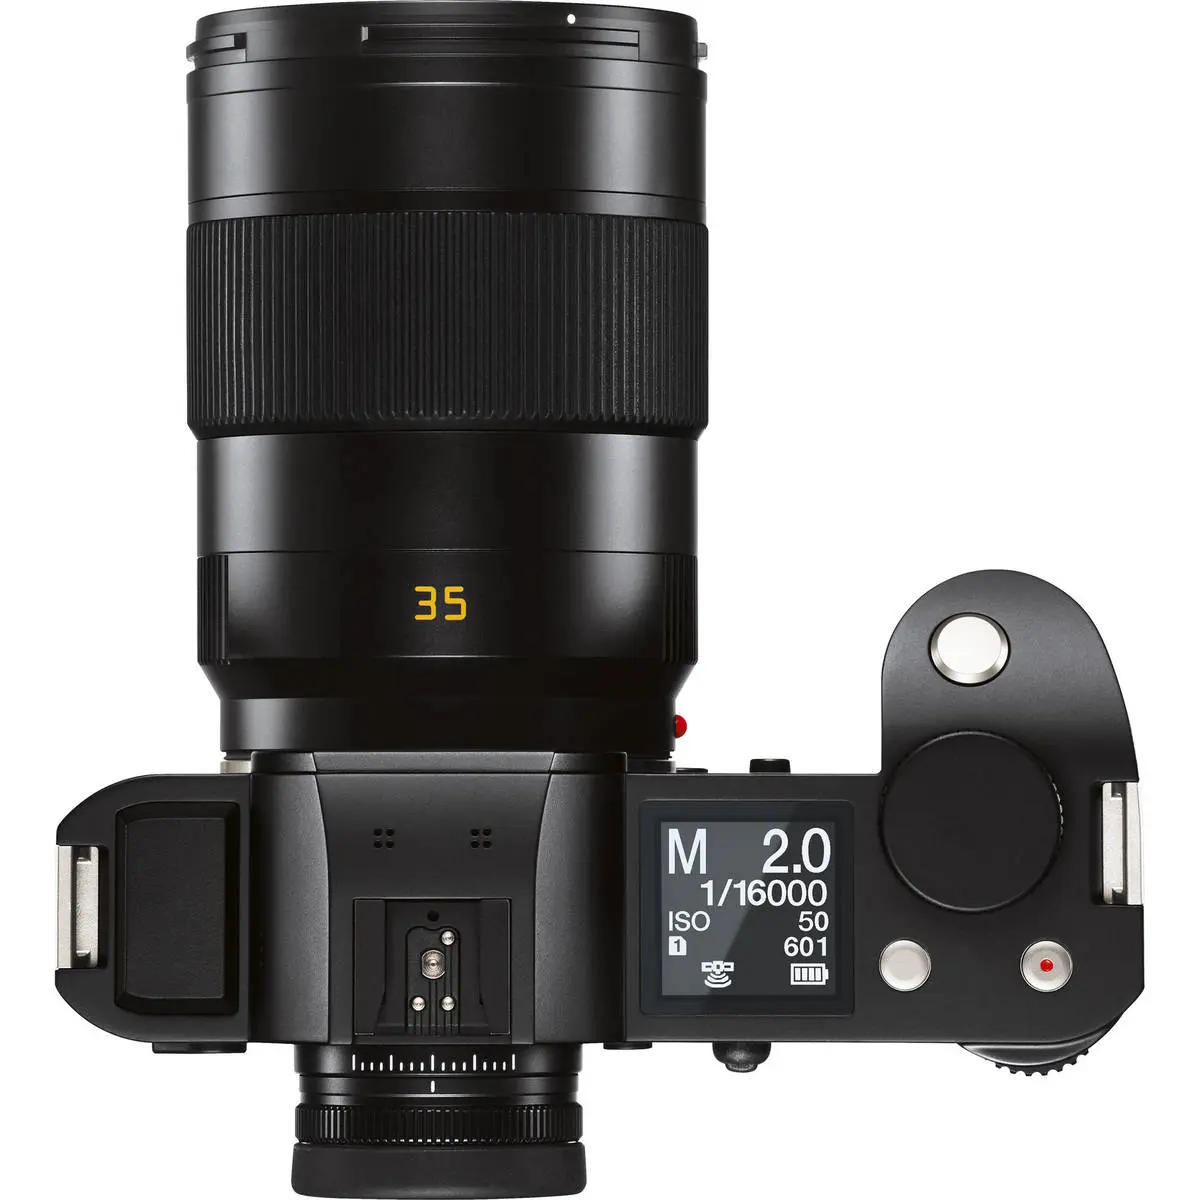 4. Leica APO-Summicron-SL 35mm f/2 Asph. Lens